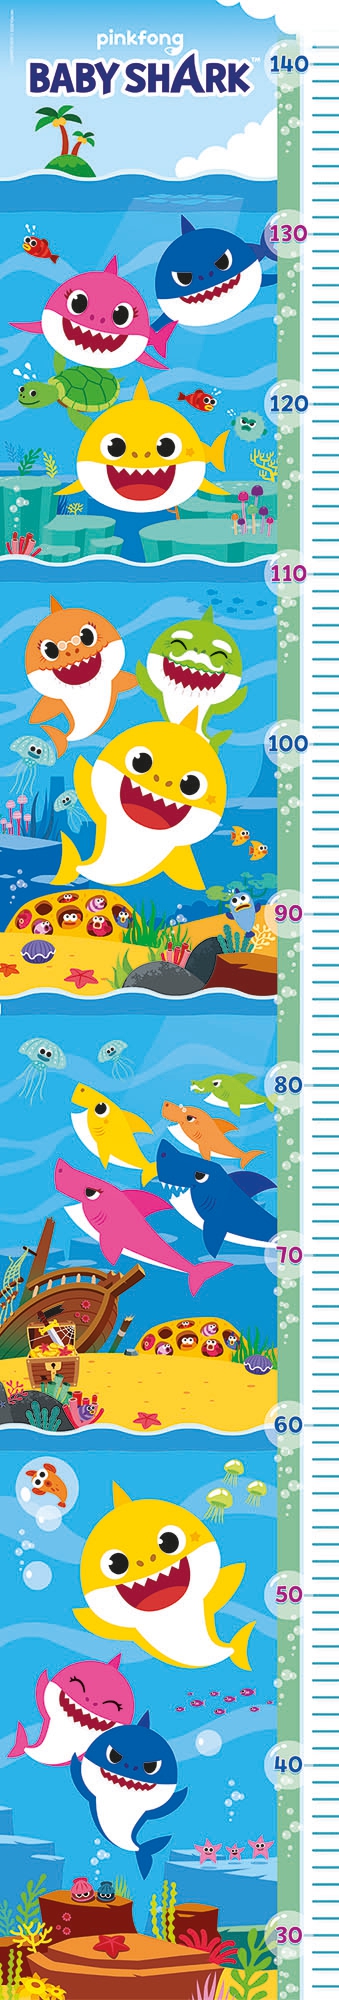 Puzzle "Medidor" 30 piezas -Baby Shark- Clementoni